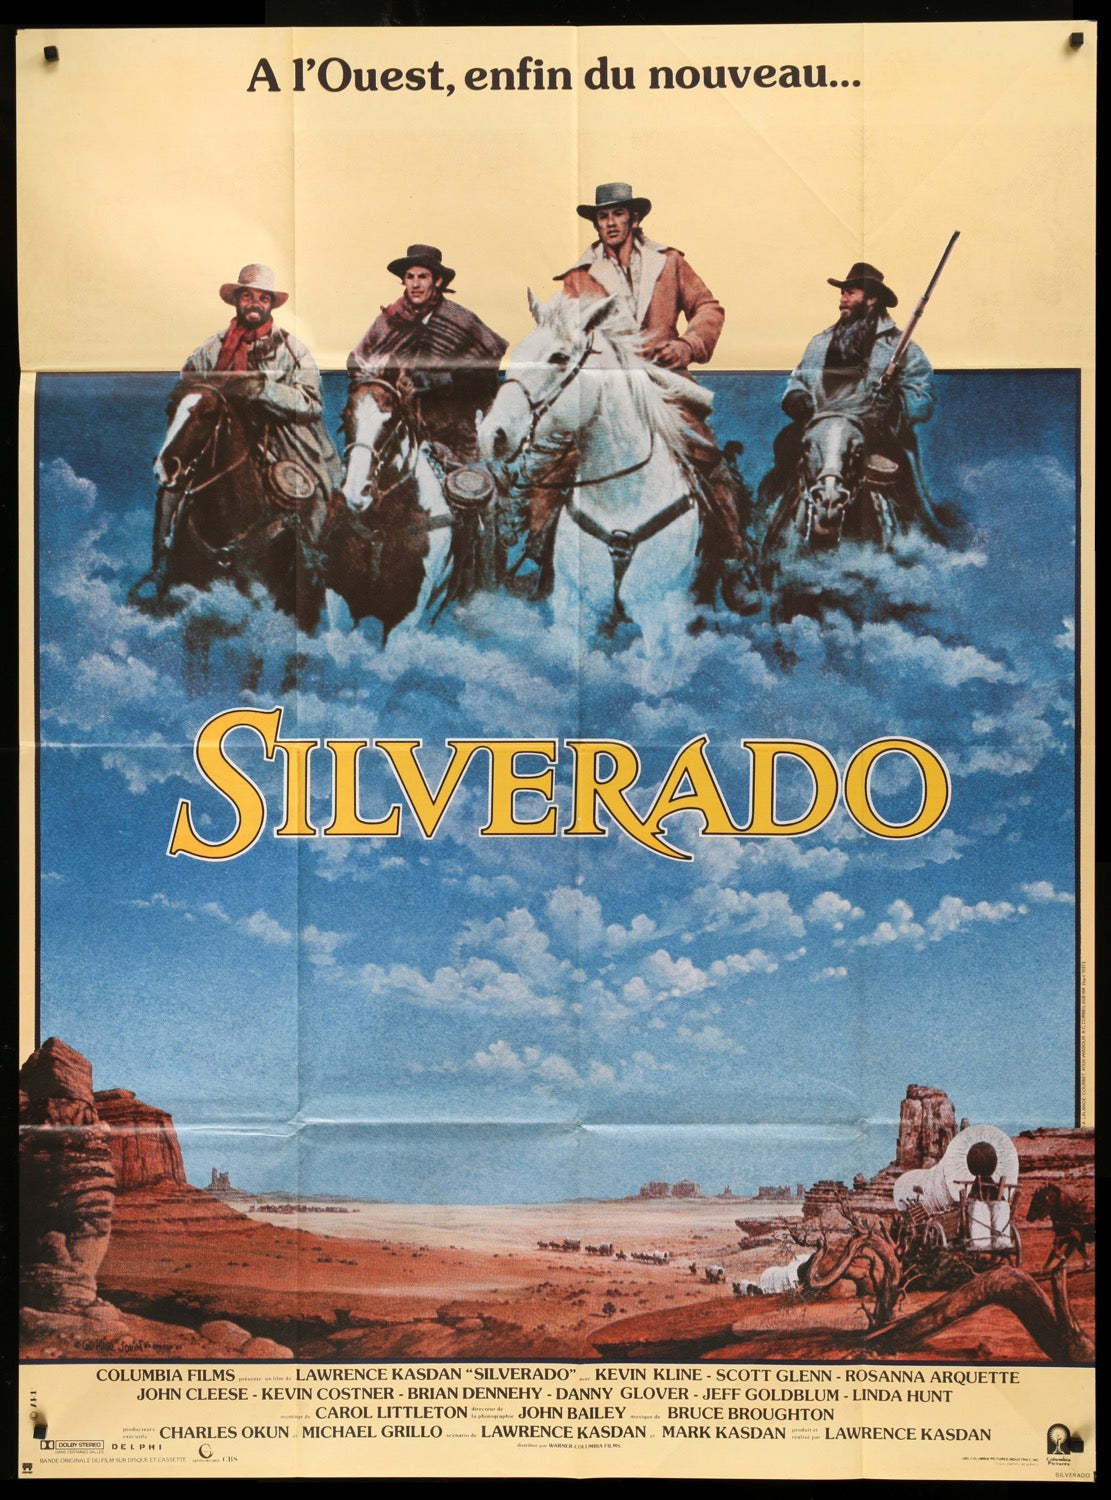 Silverado (1985) original movie poster for sale at Original Film Art